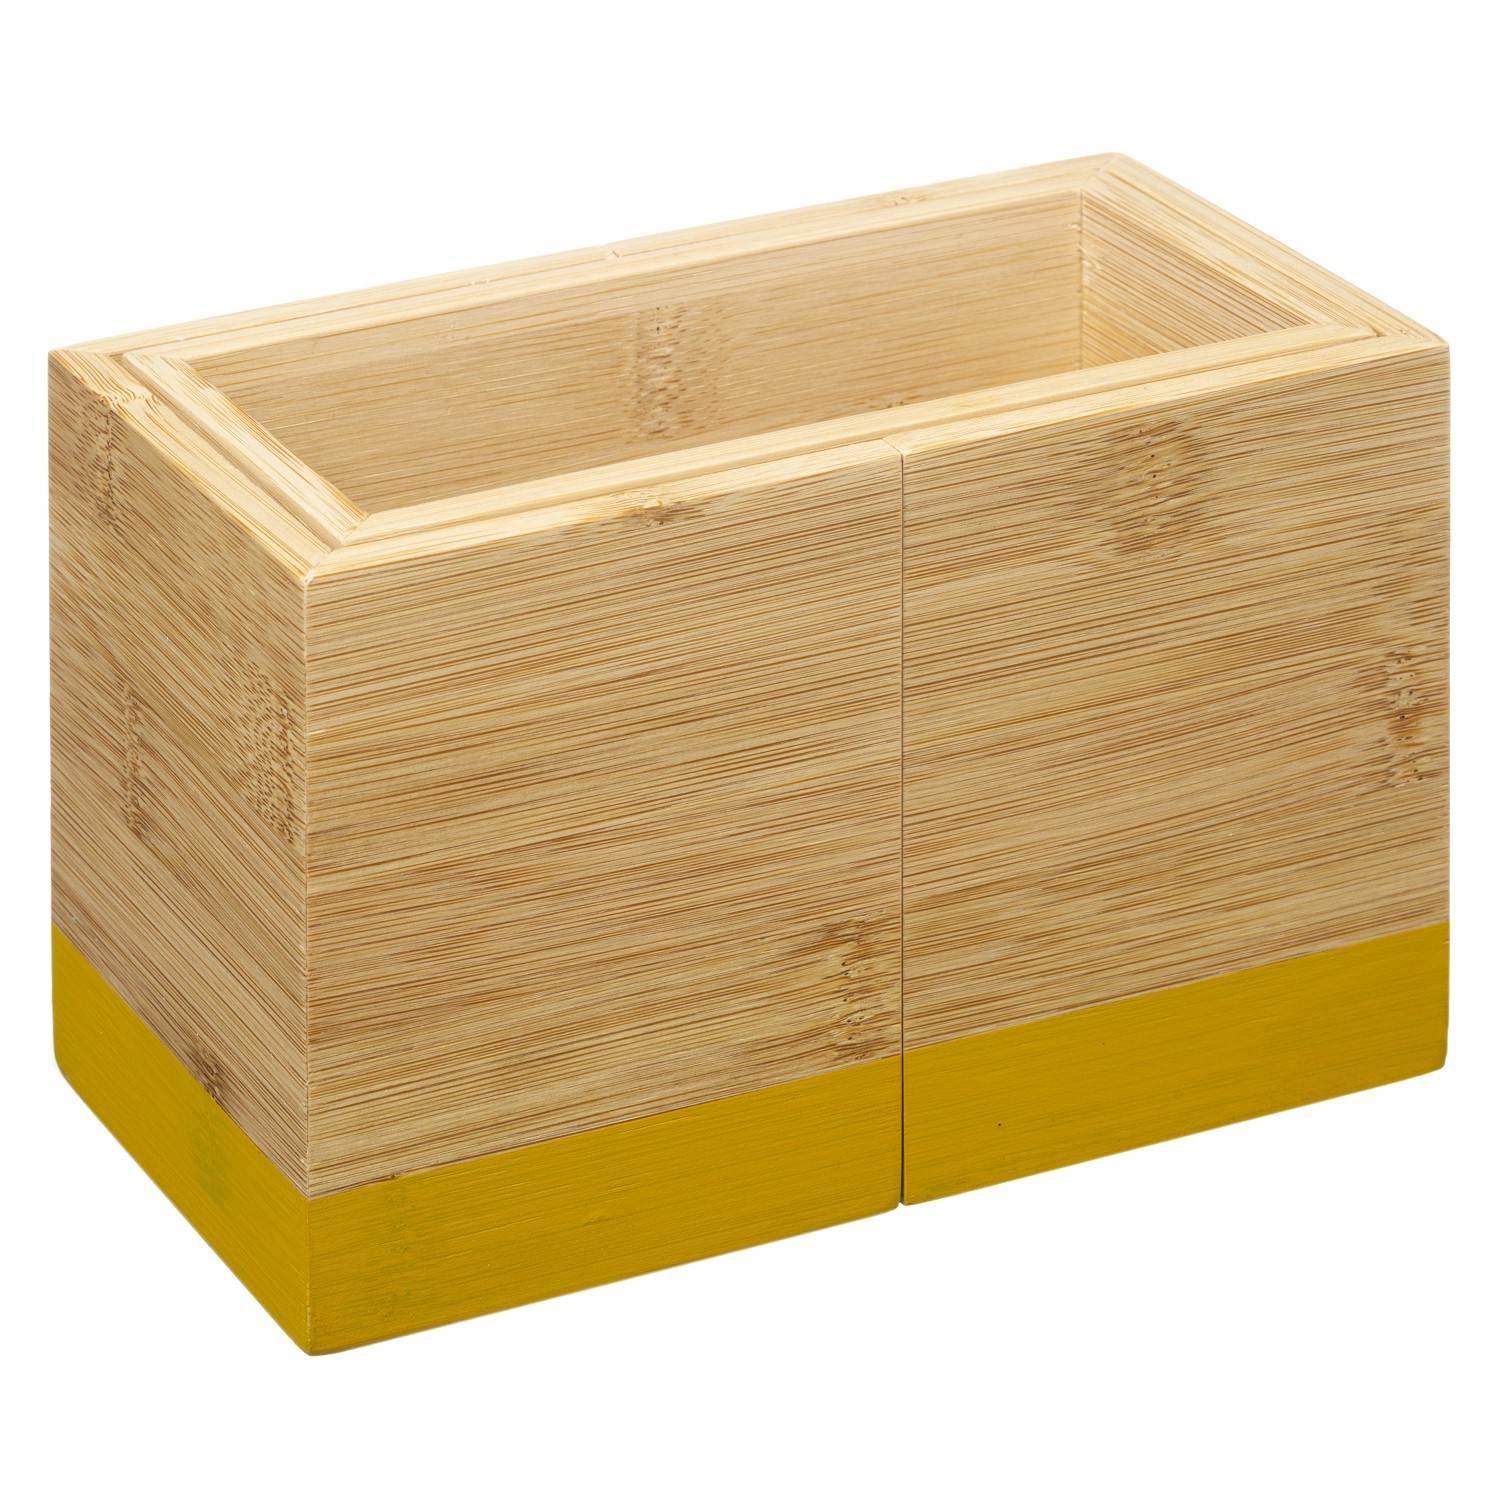 Secret de Gourmet Zásobník na příbory, organizér na příbory, bambusobý, žlutý, 18 x 10 x 12 cm - EMAKO.CZ s.r.o.